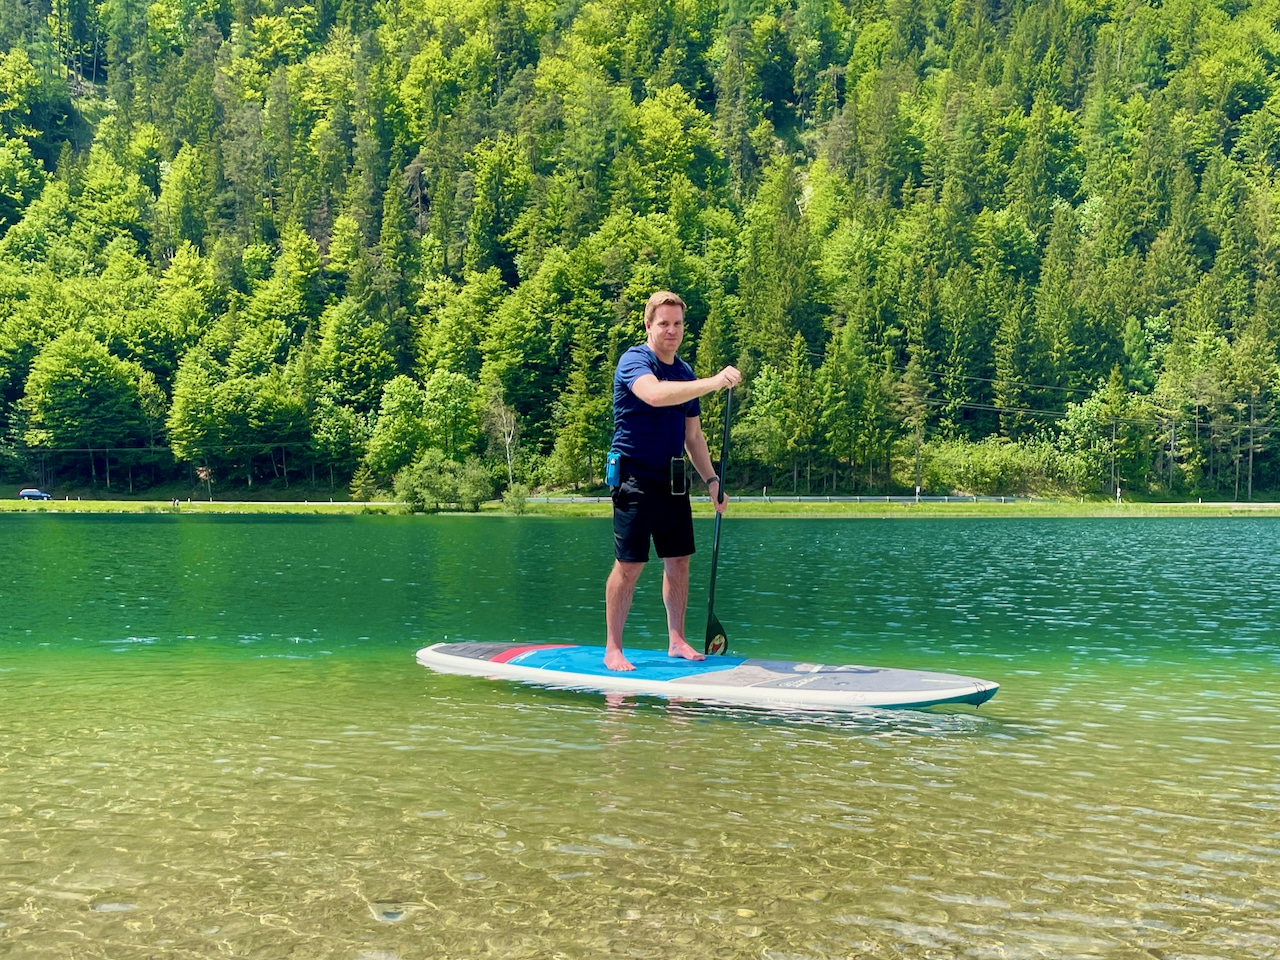 Une eau cristalline vert émeraude vous attend pour pagayer debout sur le Pillersee. SUP sur le rapport Pillersee Experience Stand Up Paddling